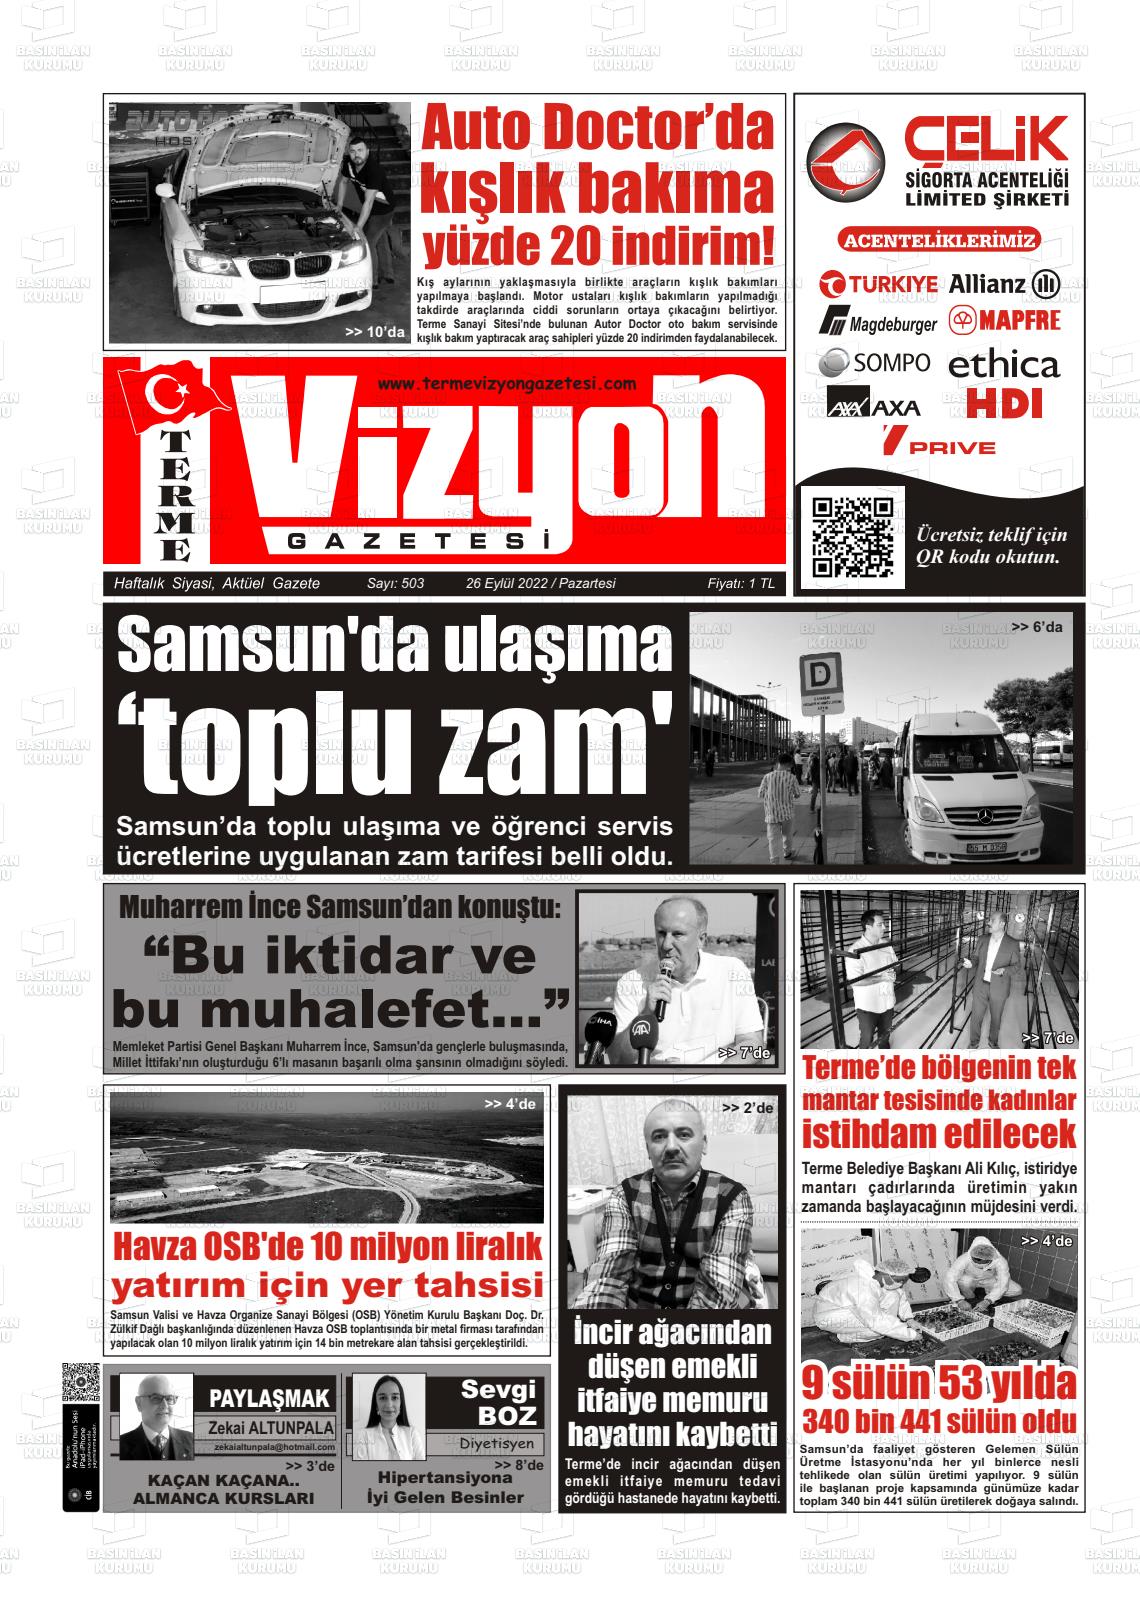 26 Eylül 2022 Terme Vizyon Gazete Manşeti